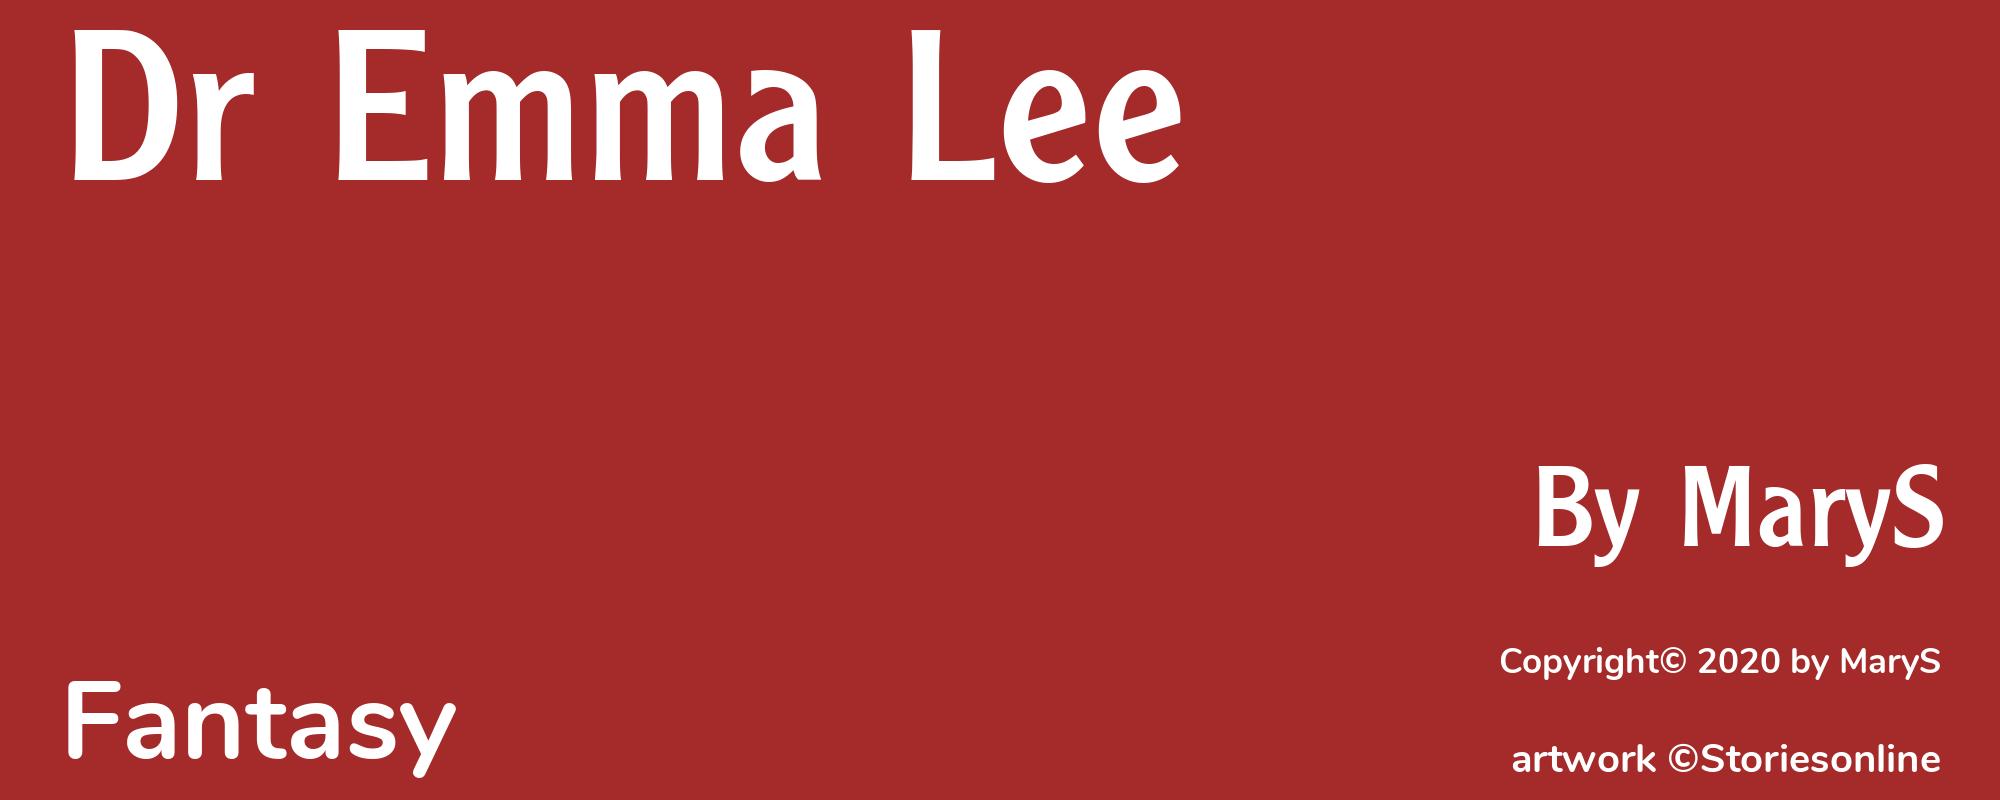 Dr Emma Lee - Cover